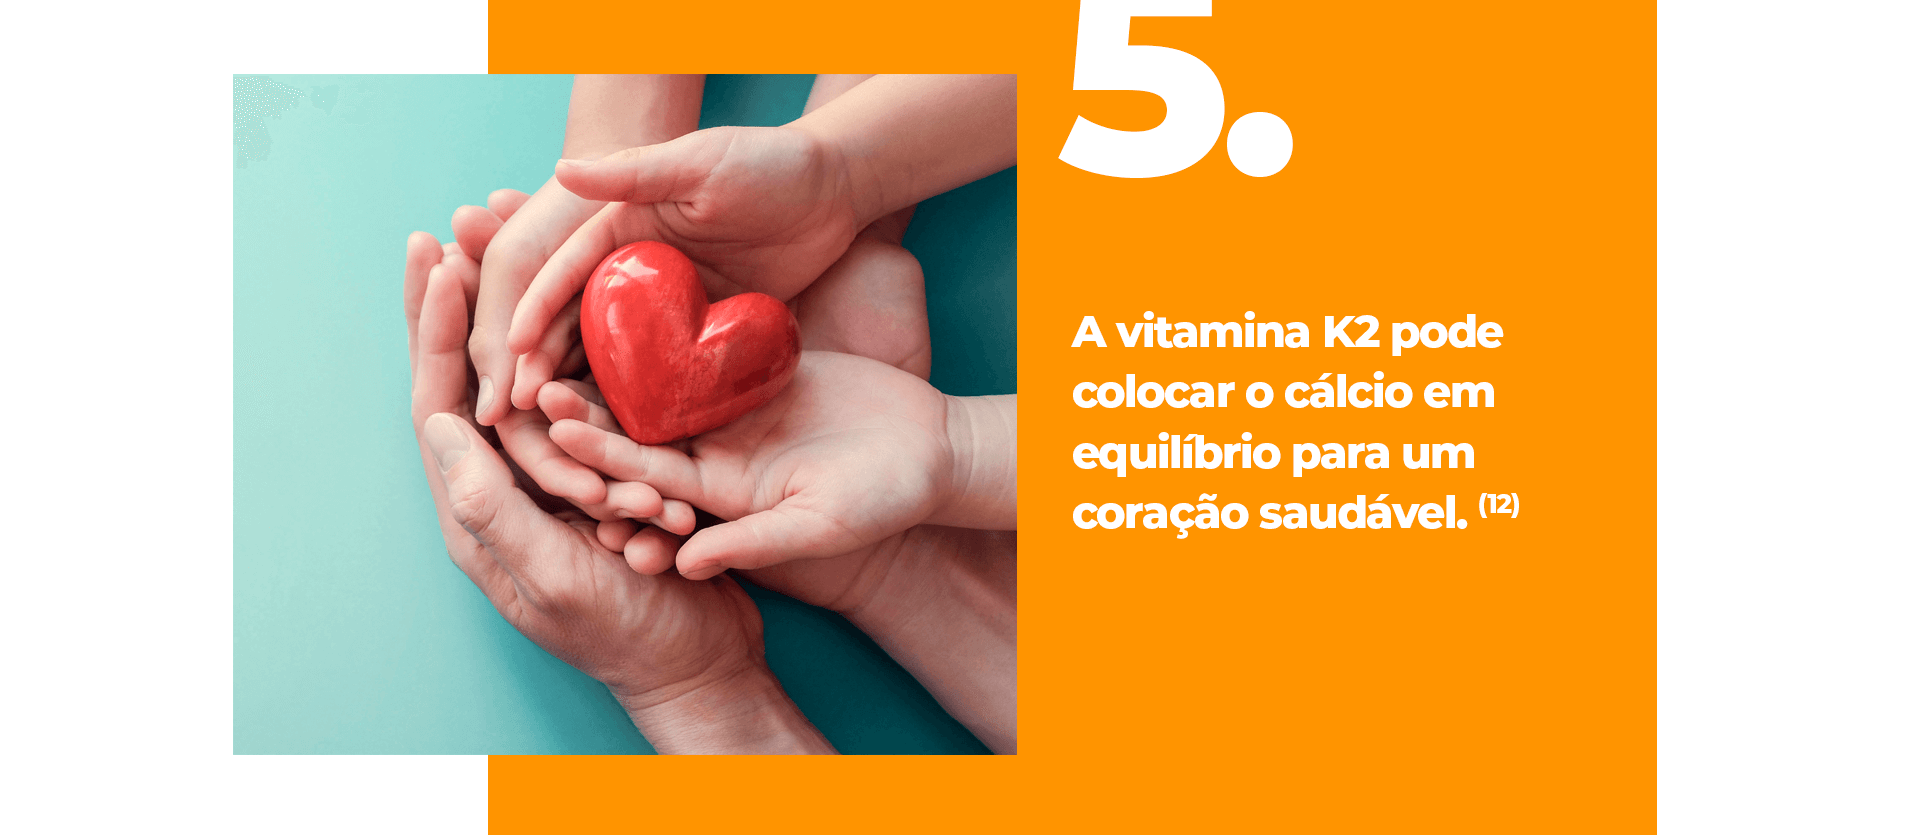 A vitamina K2 pode ativar proteínas importantes, como a osteocalcina, responsável por transportar o cálcio para os ossos e dentes, e a proteína Gla da matriz (MGP), que evita a calcificação de tecidos moles e vasos sanguíneos. Para que essas proteínas funcionem adequadamente, é importante garantir uma ingestão adequada de vitamina K2. (11)